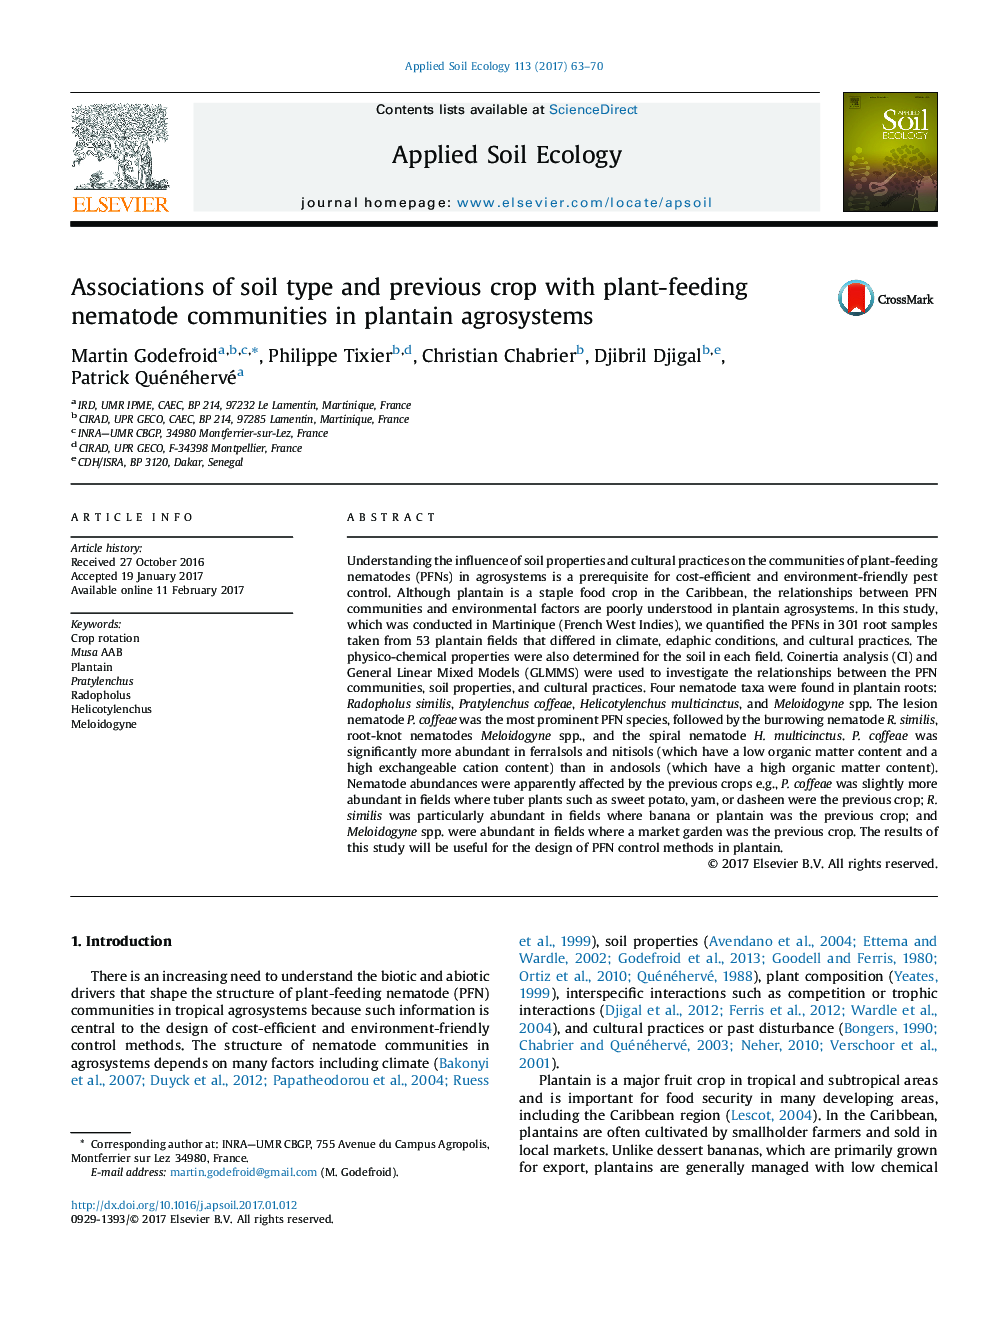 انجمن های نوع خاک و محصول قبلی با جوامع بومی نشاء کشاورزی در سیستم های کشاورزی آفتابگردان 